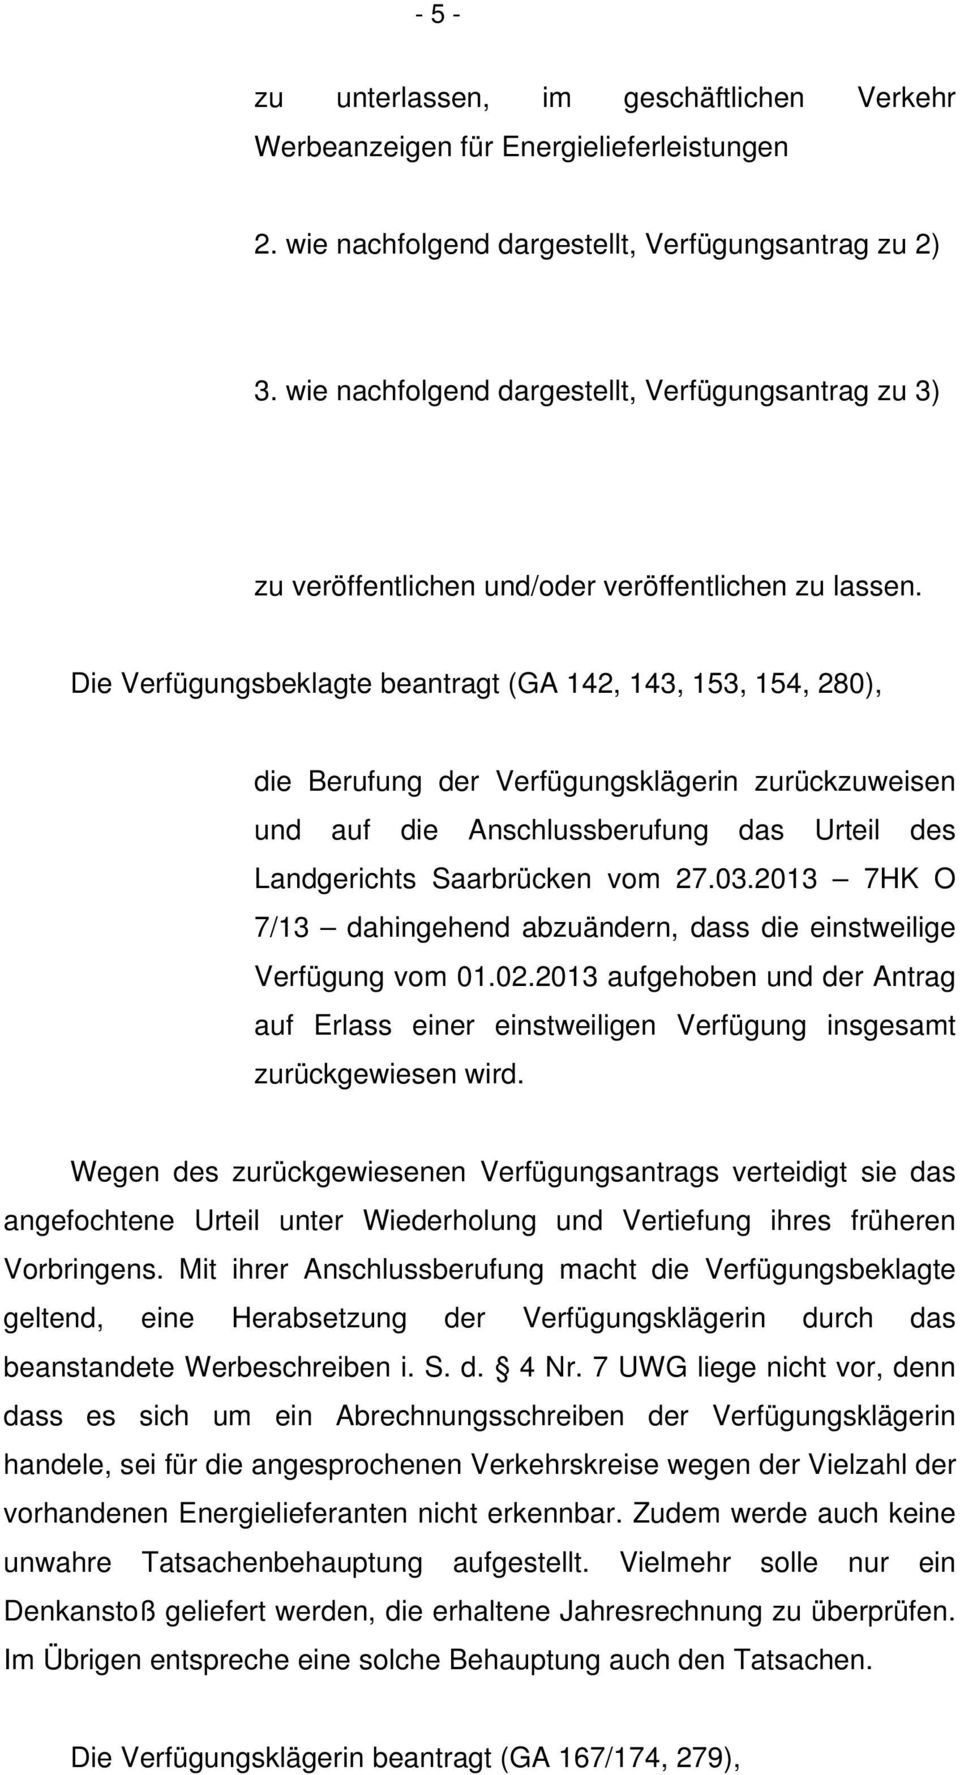 Die Verfügungsbeklagte beantragt (GA 142, 143, 153, 154, 280), die Berufung der Verfügungsklägerin zurückzuweisen und auf die Anschlussberufung das Urteil des Landgerichts Saarbrücken vom 27.03.